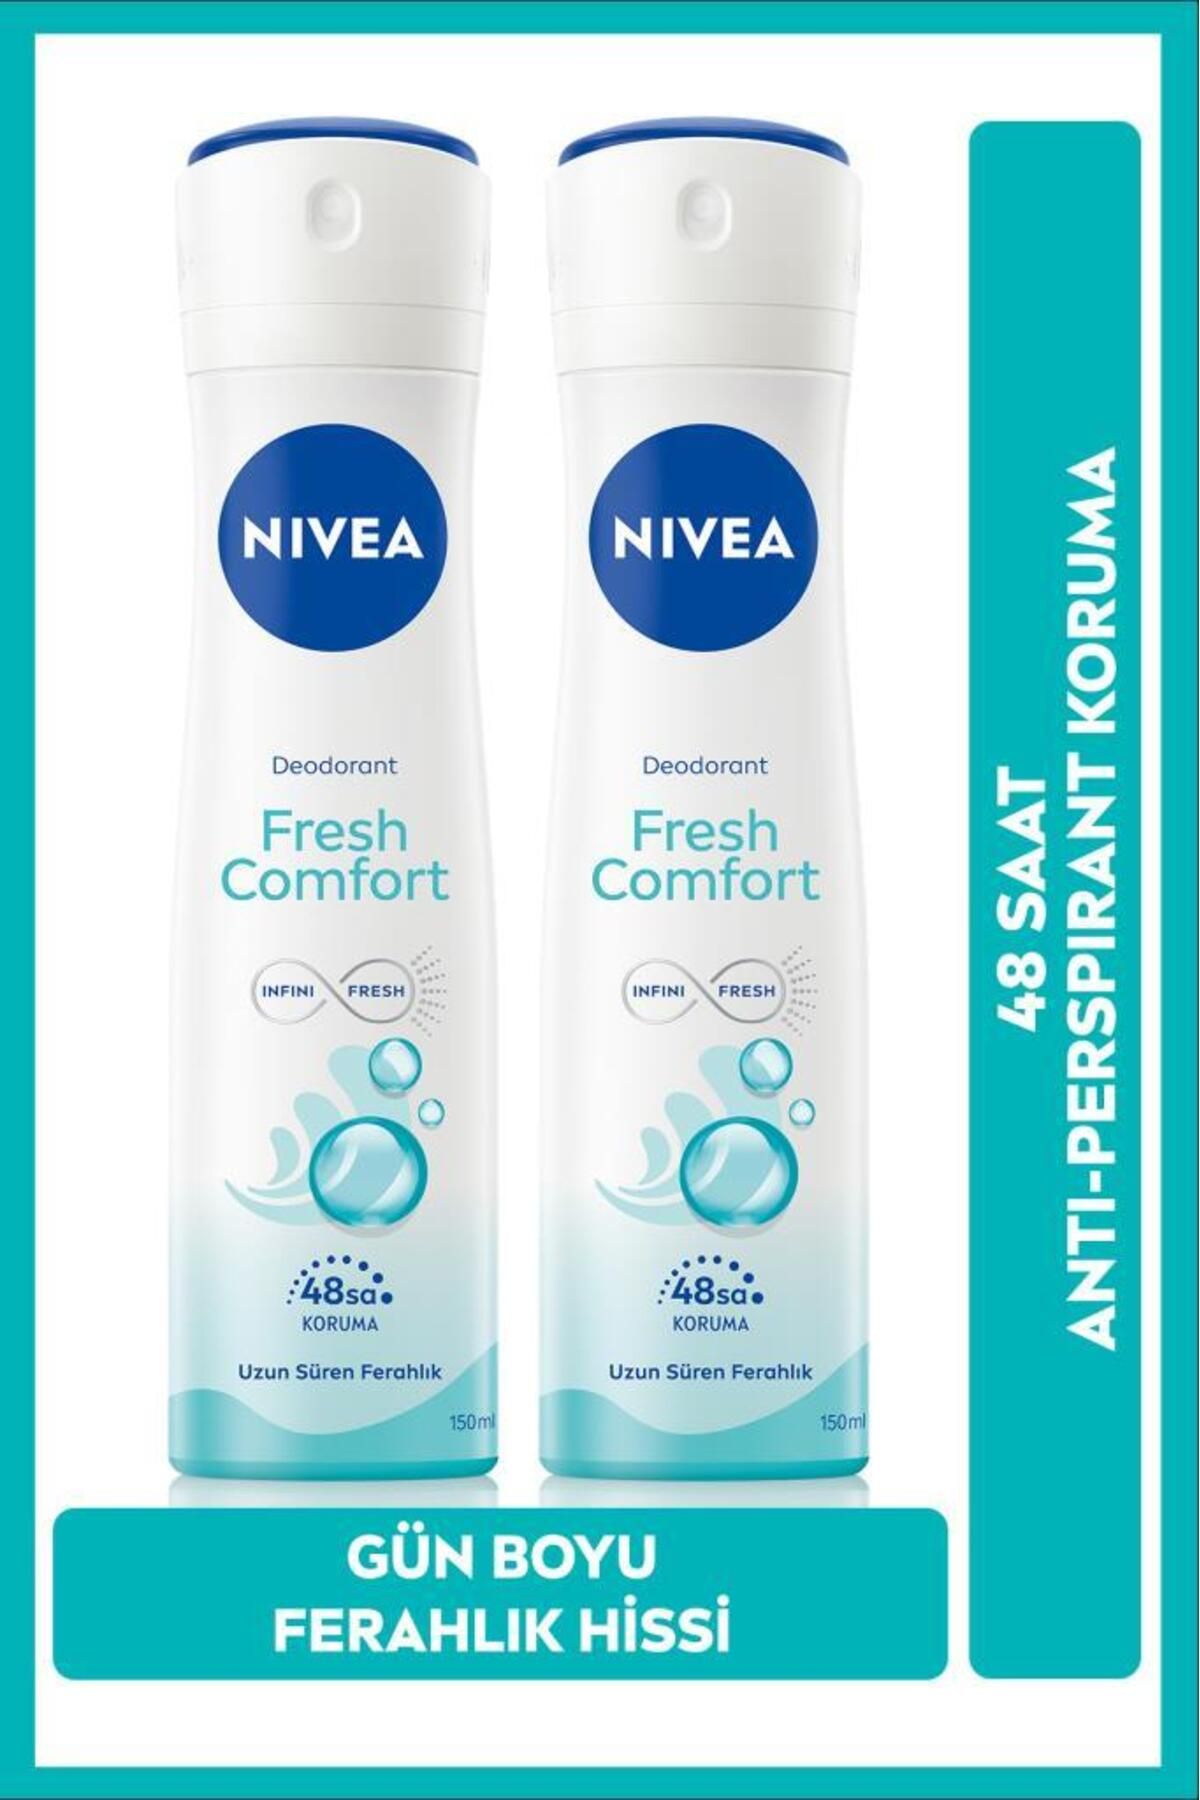 NIVEA Kadın Sprey Deodorant Fresh Comfort 48 Saat Koruma 150mlx2